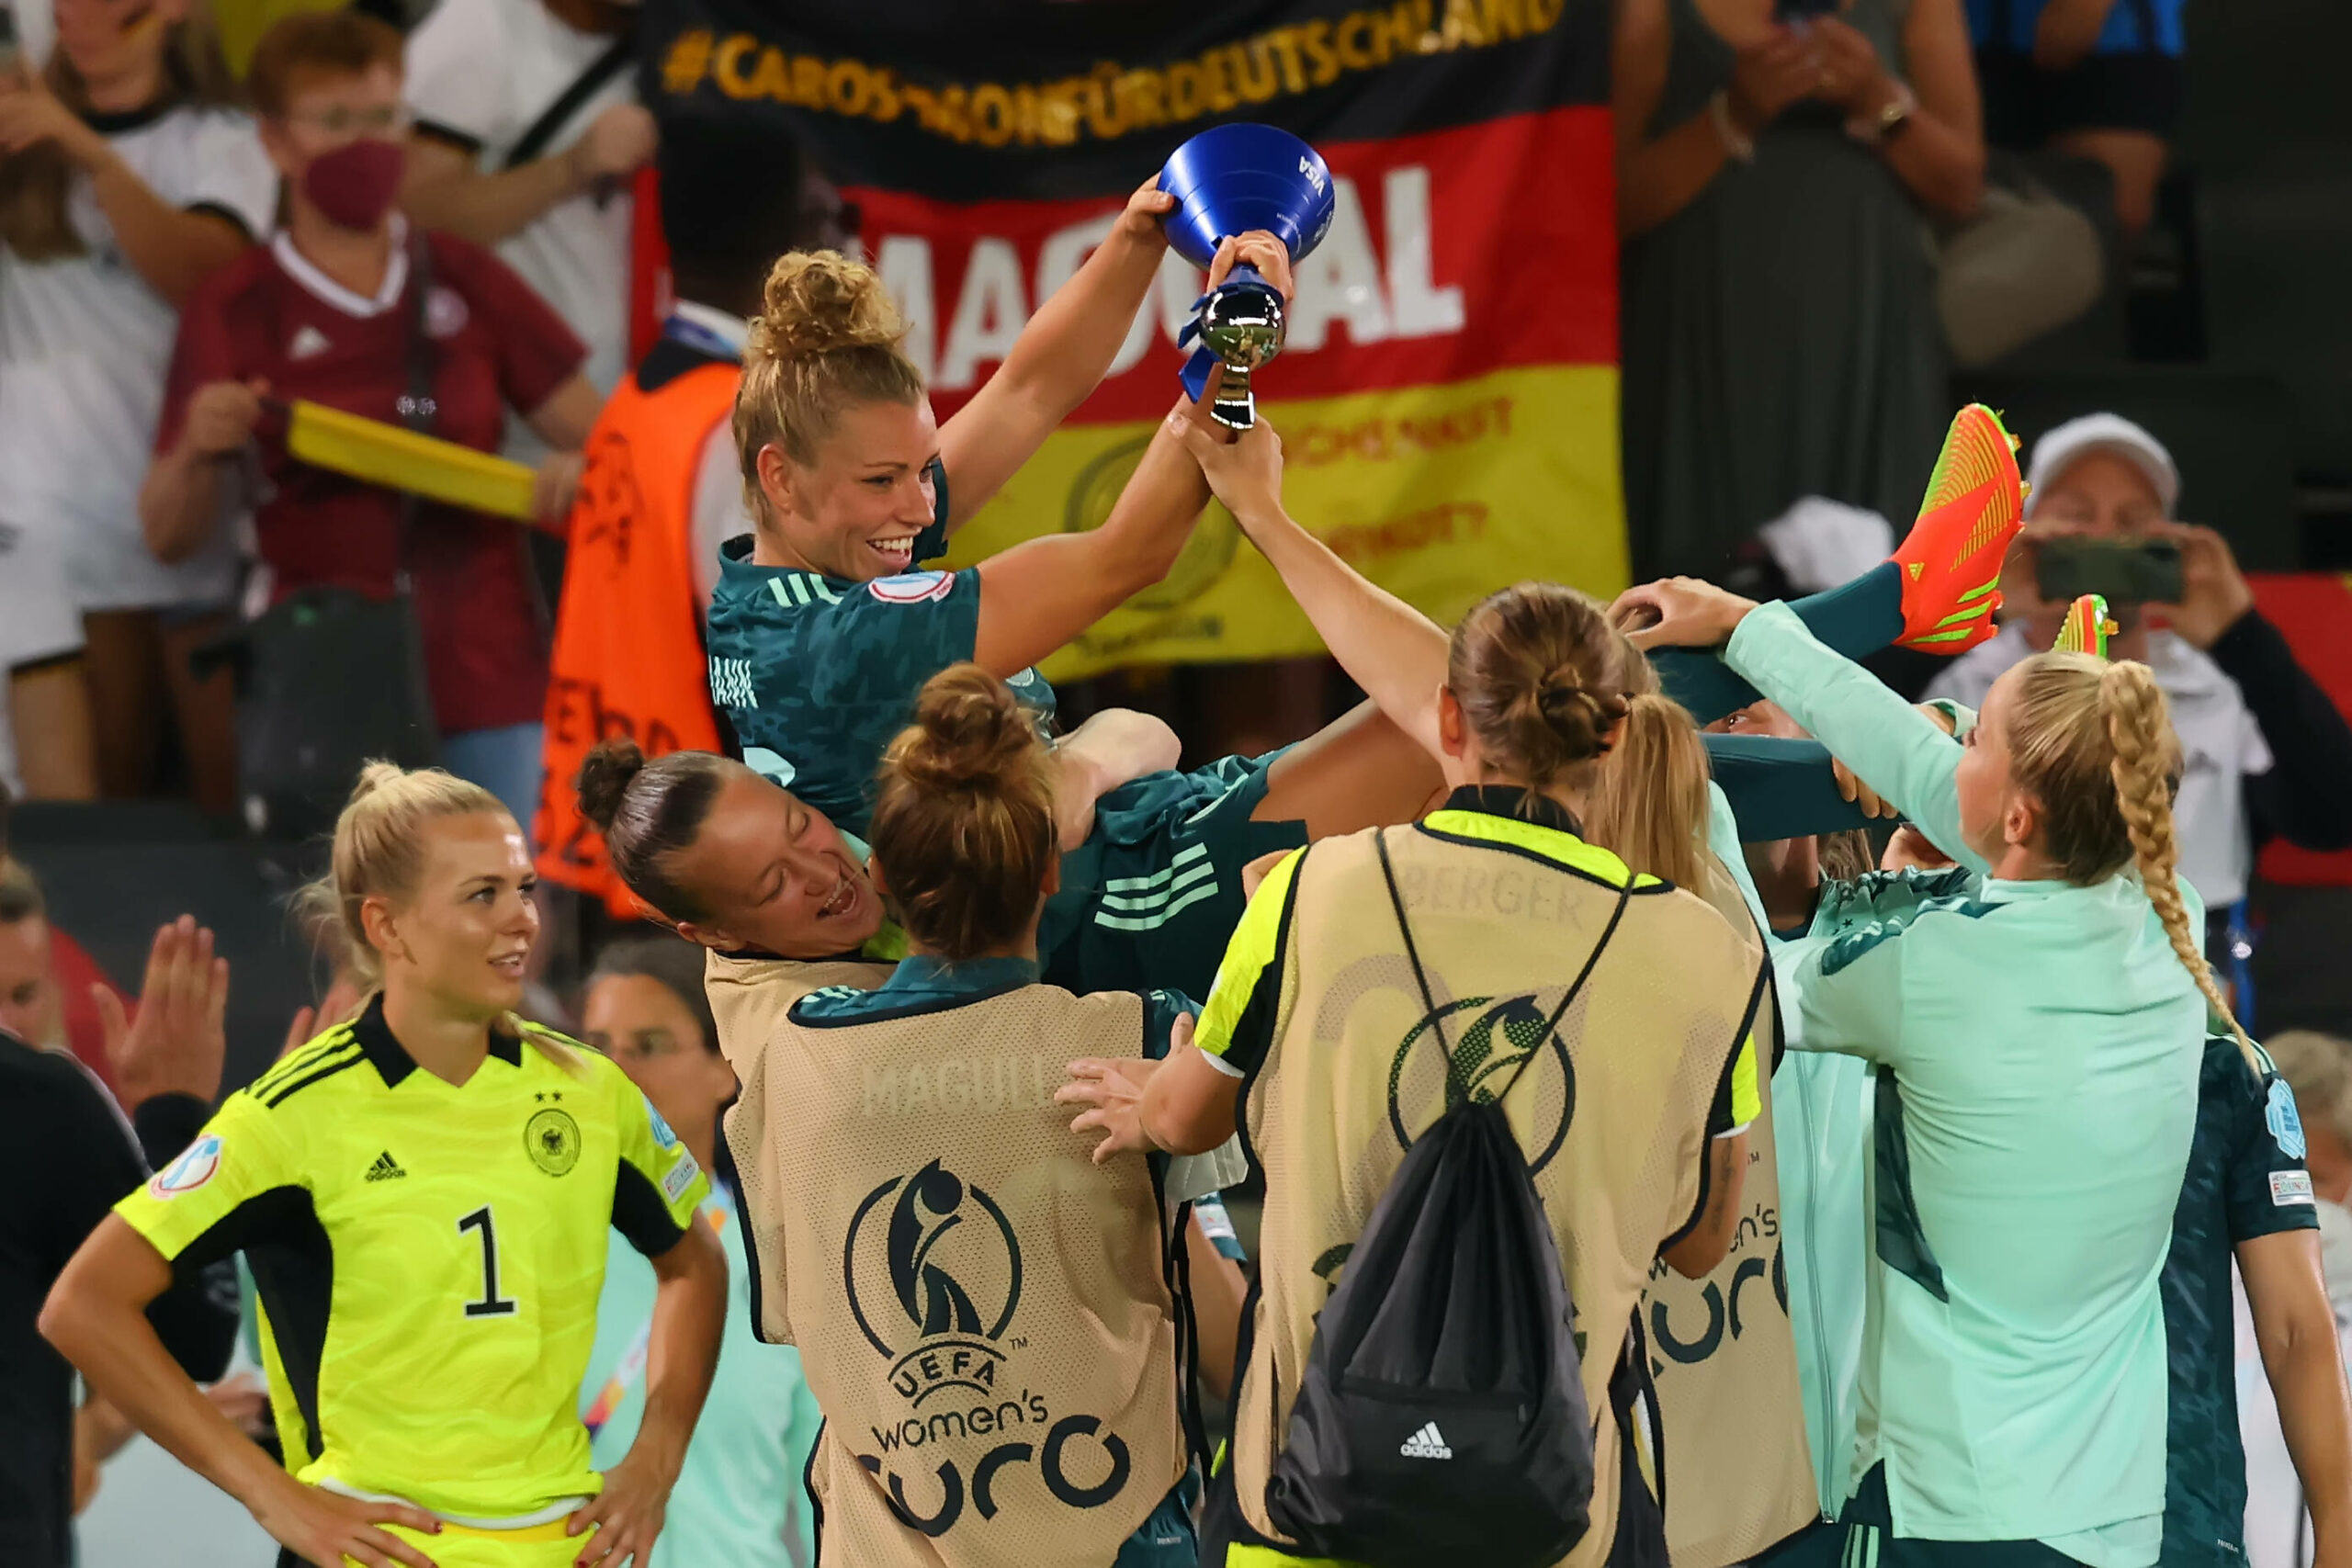 Die DFB-Frauen erreichen das Viertelfinale und werfen Linda Dallmann in die Luft, nachdem diese die Auszeichnung für die beste Spielerin des Spiels erhalten hat.